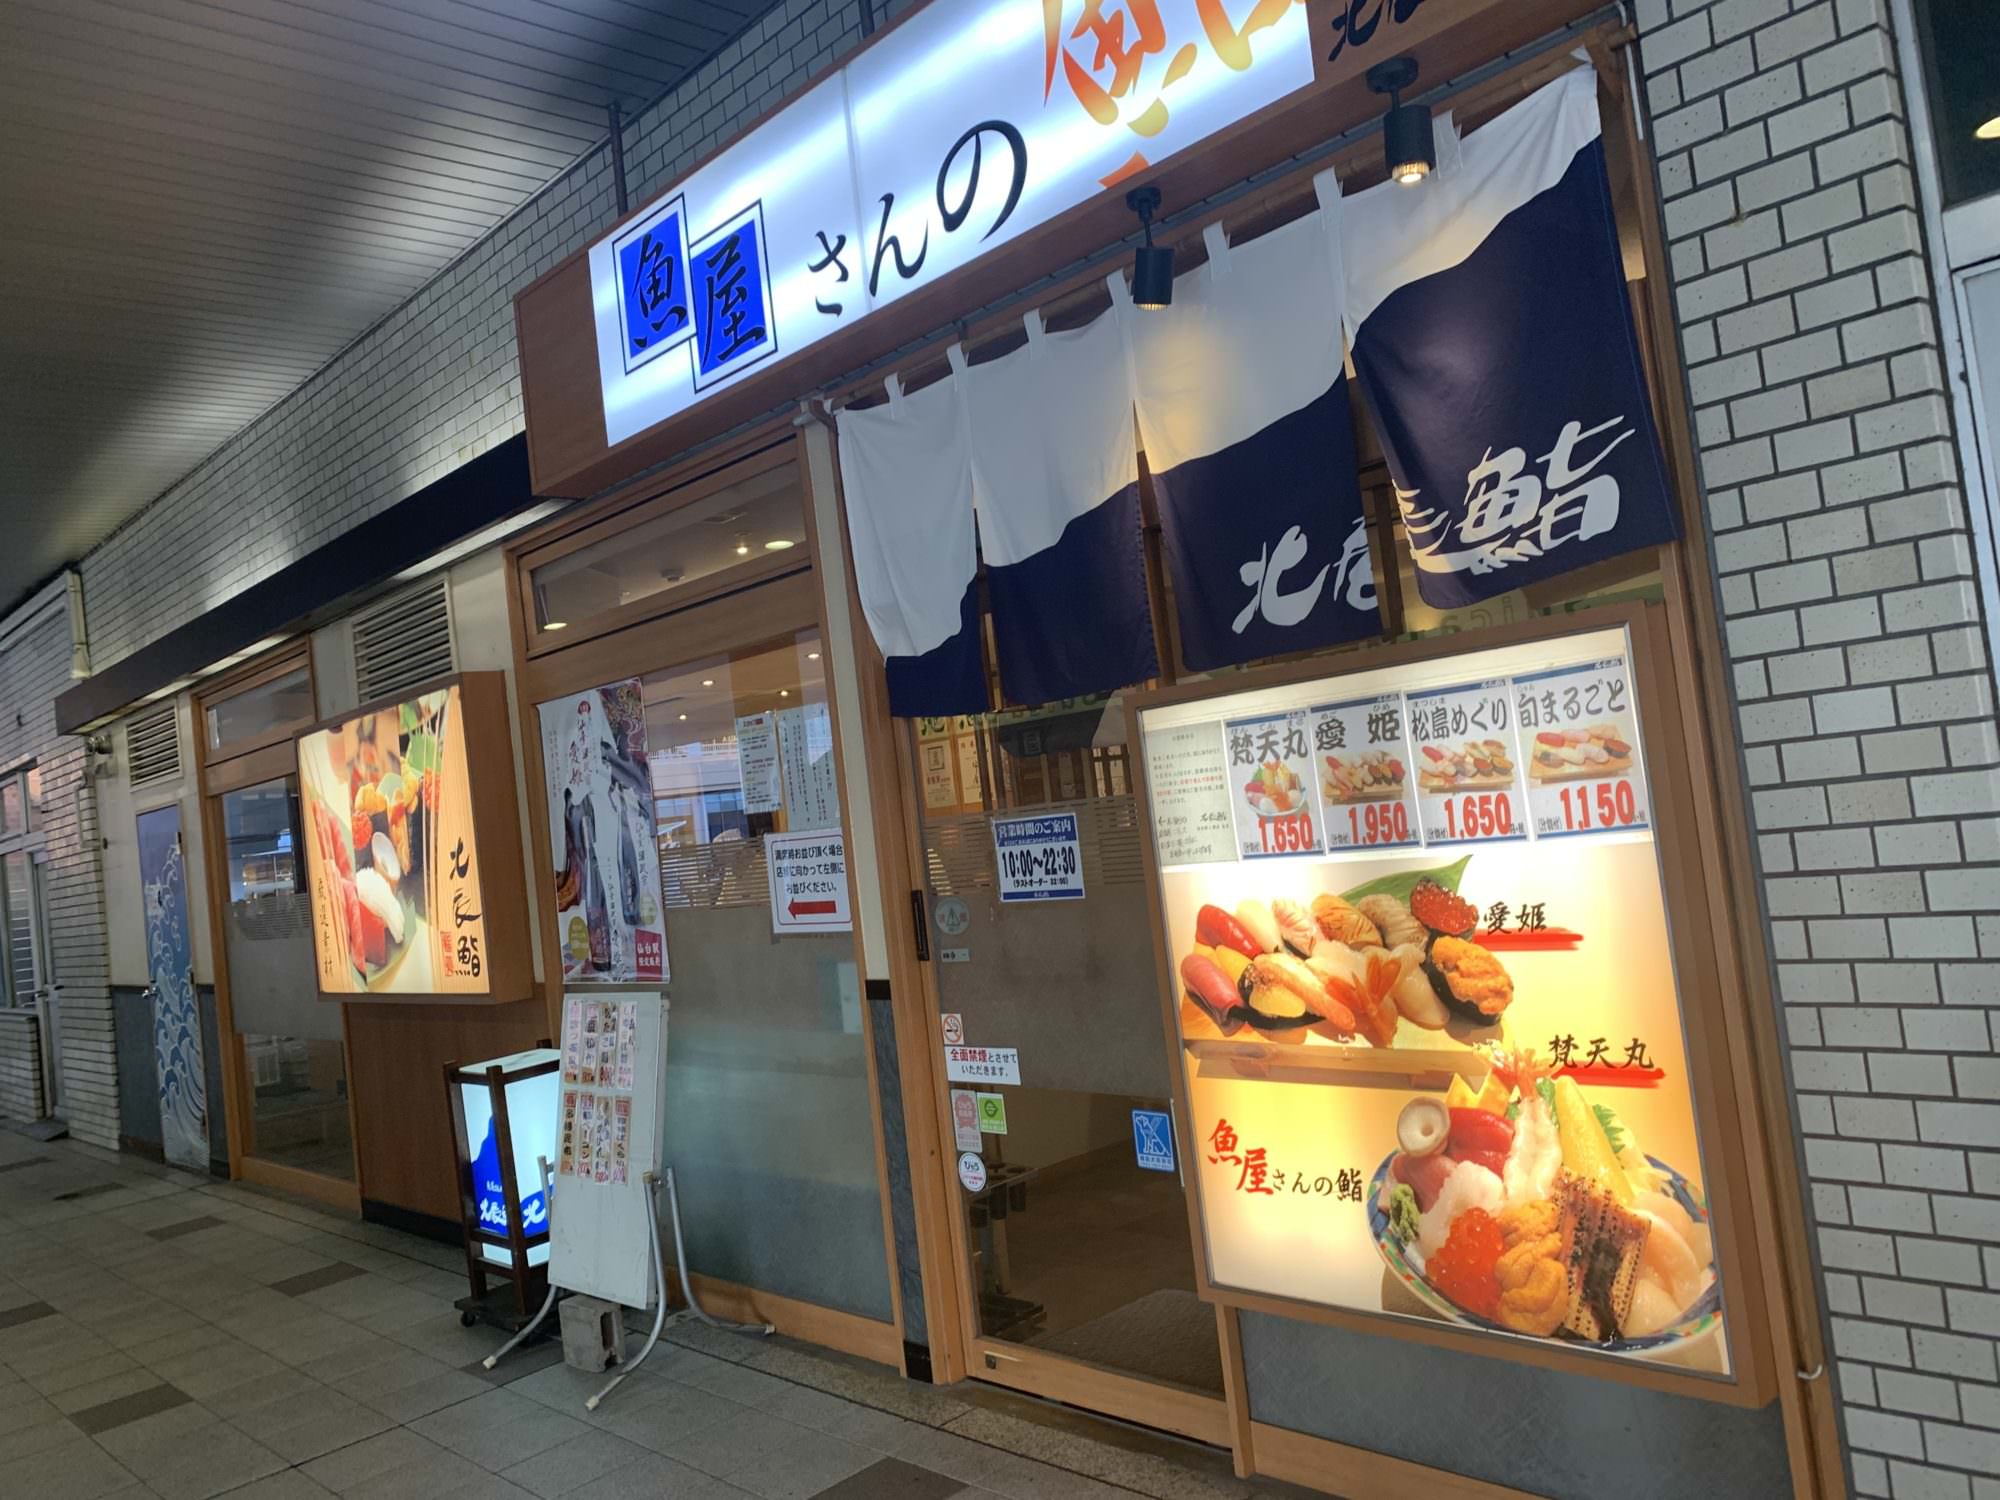 仙台グルメ 北辰鮨 仙台駅店 駅でサクッと食べれるコスパの高いお鮨 キャリア を脱ぎ捨てて